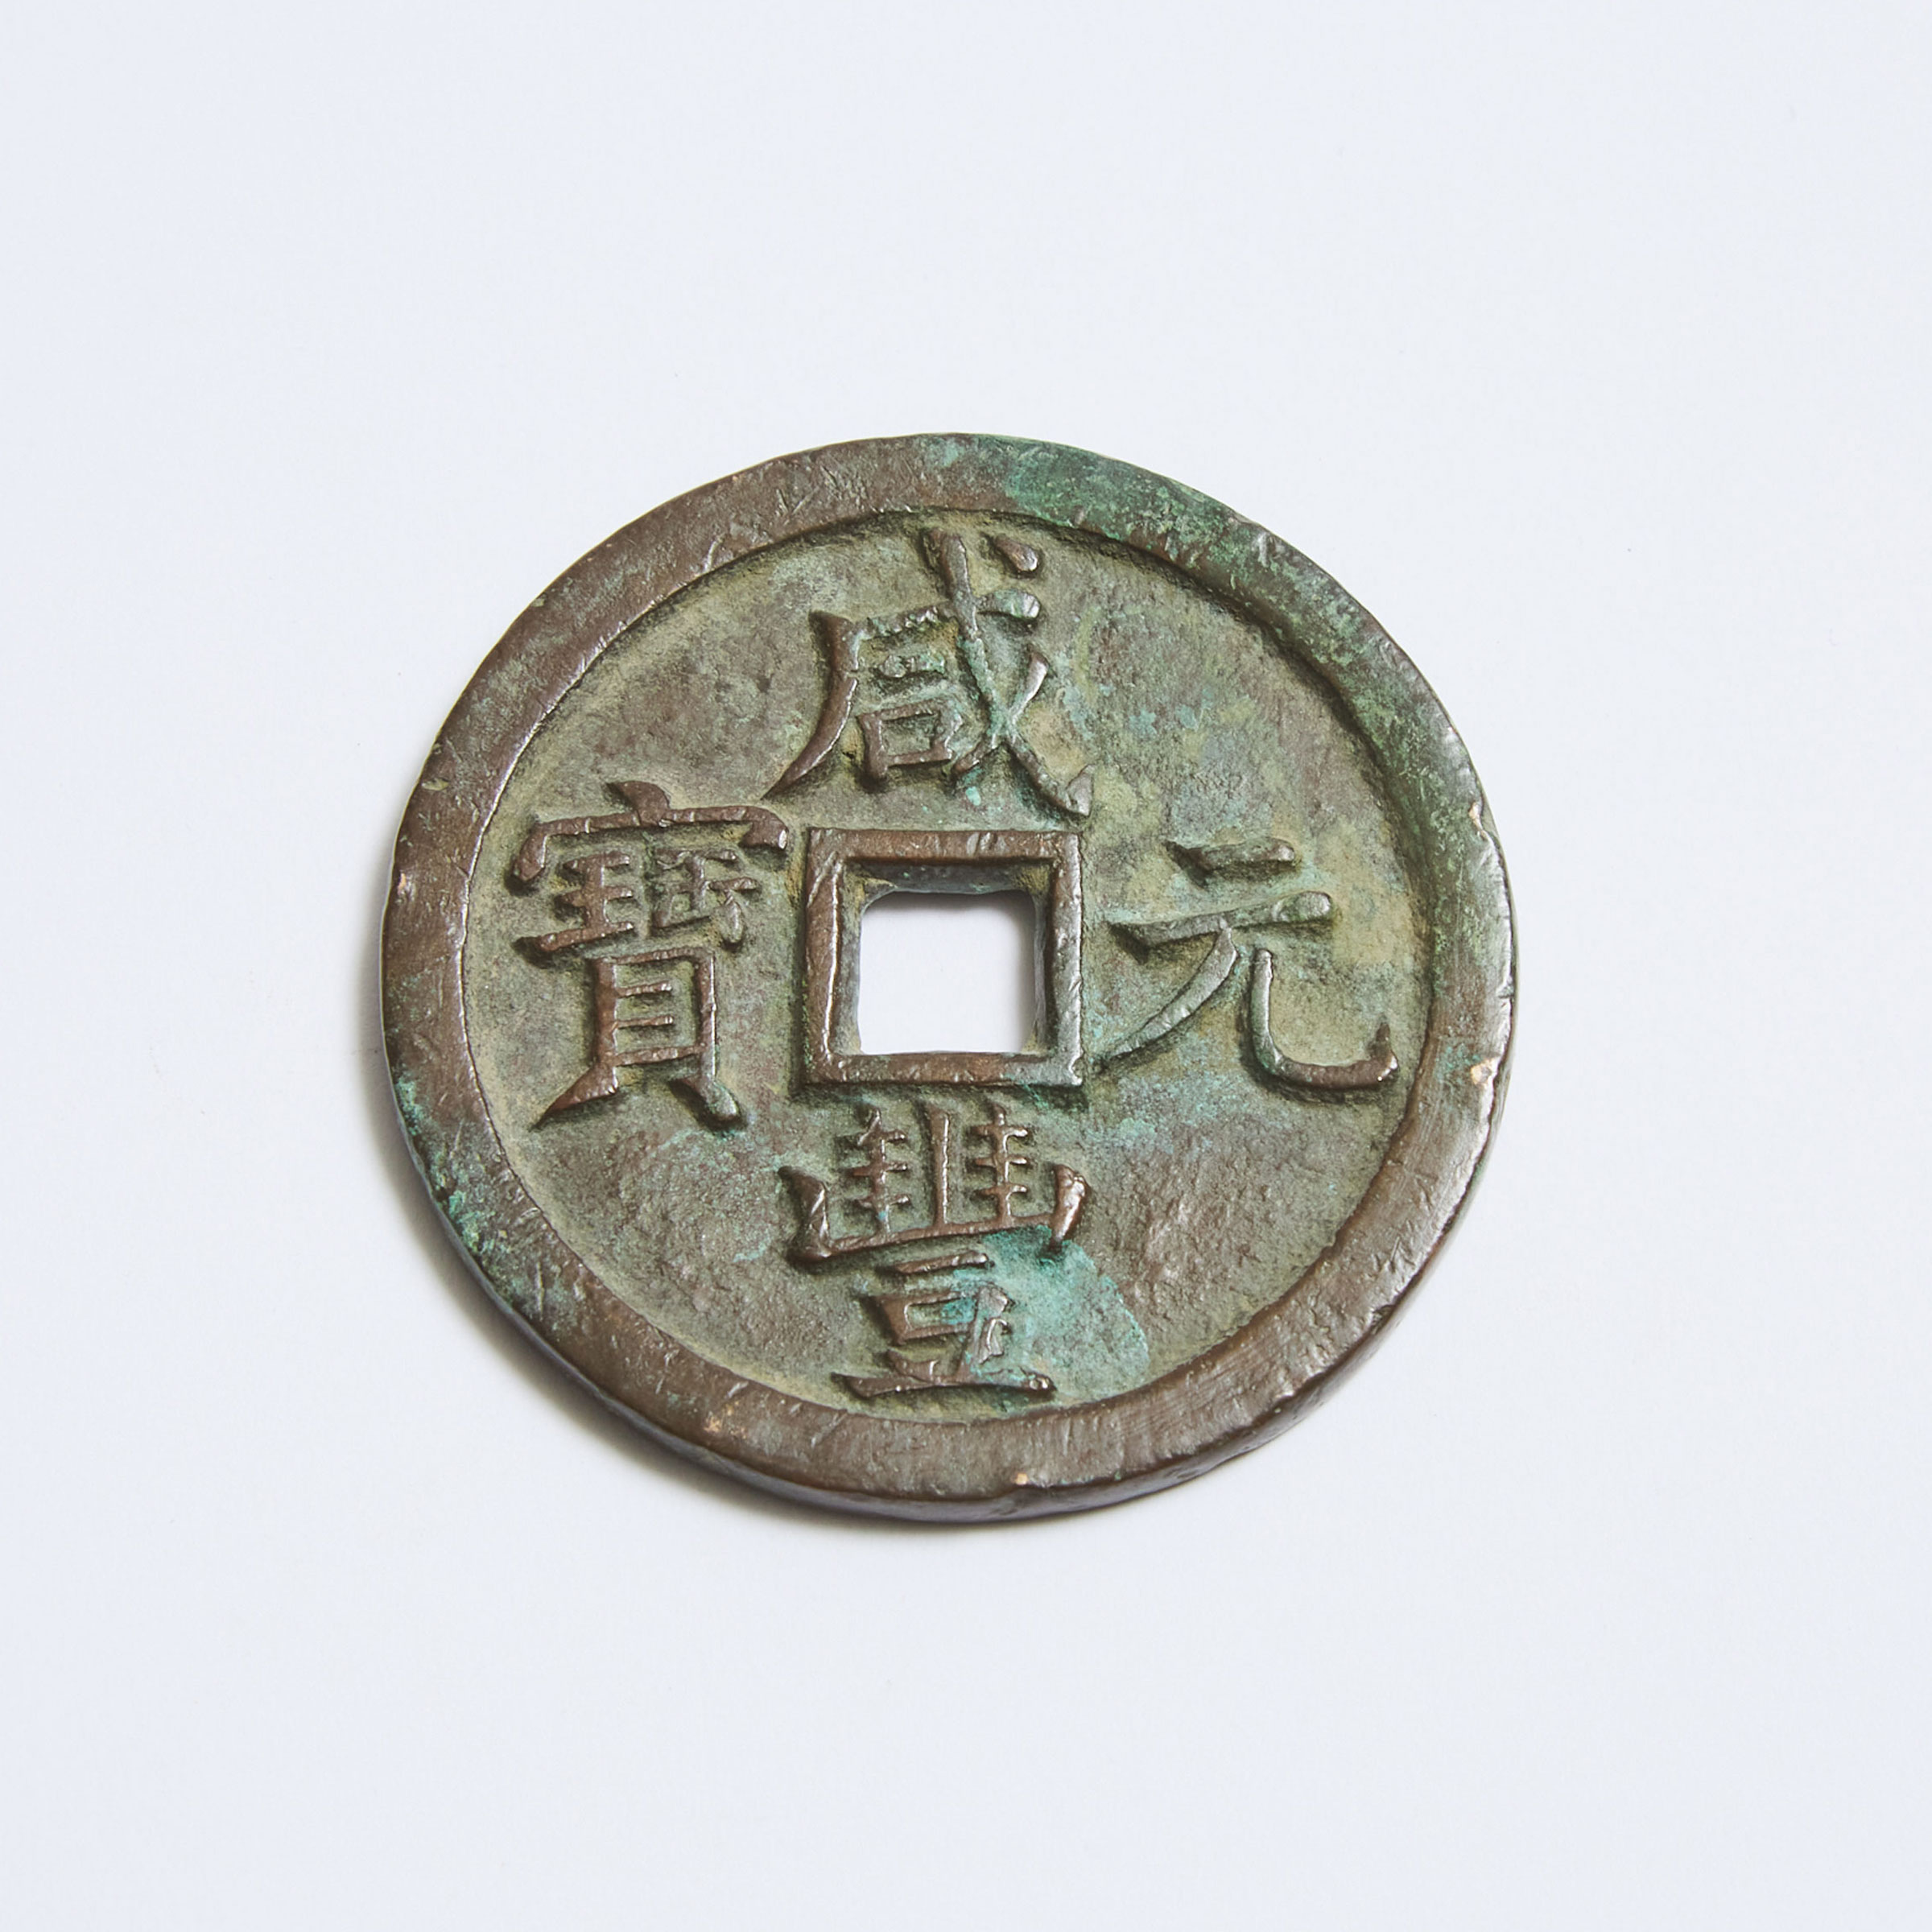 A Chinese Xianfeng 500 Cash Coin